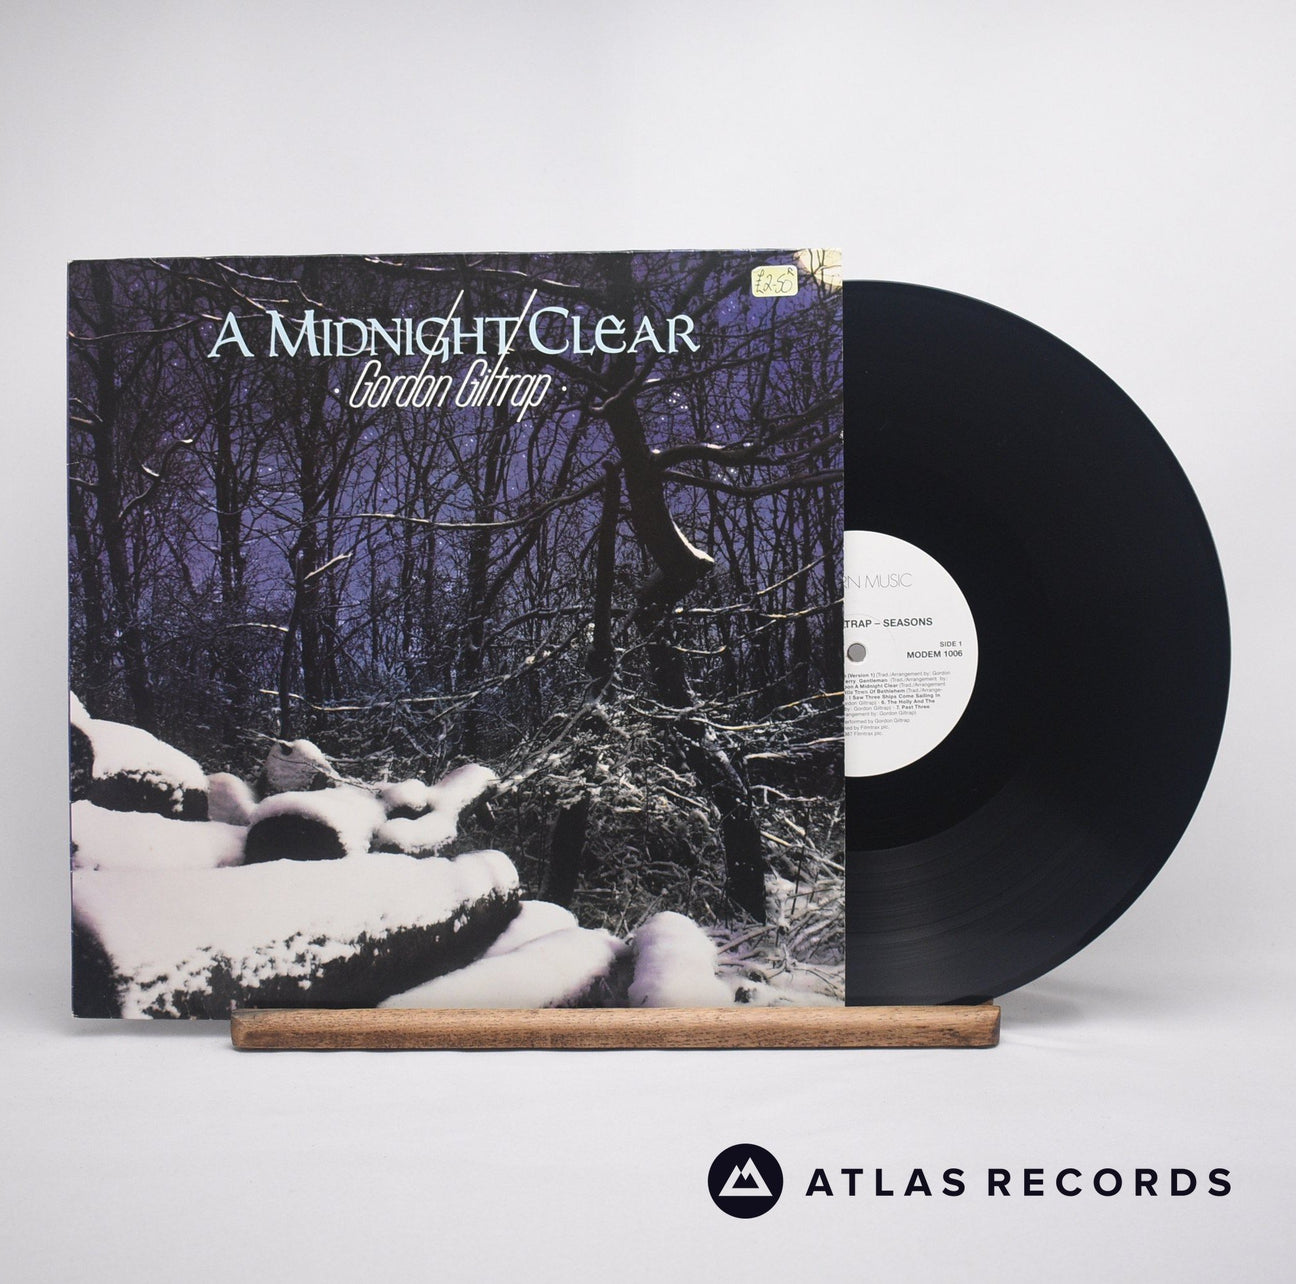 Gordon Giltrap A Midnight Clear LP Vinyl Record - Front Cover & Record